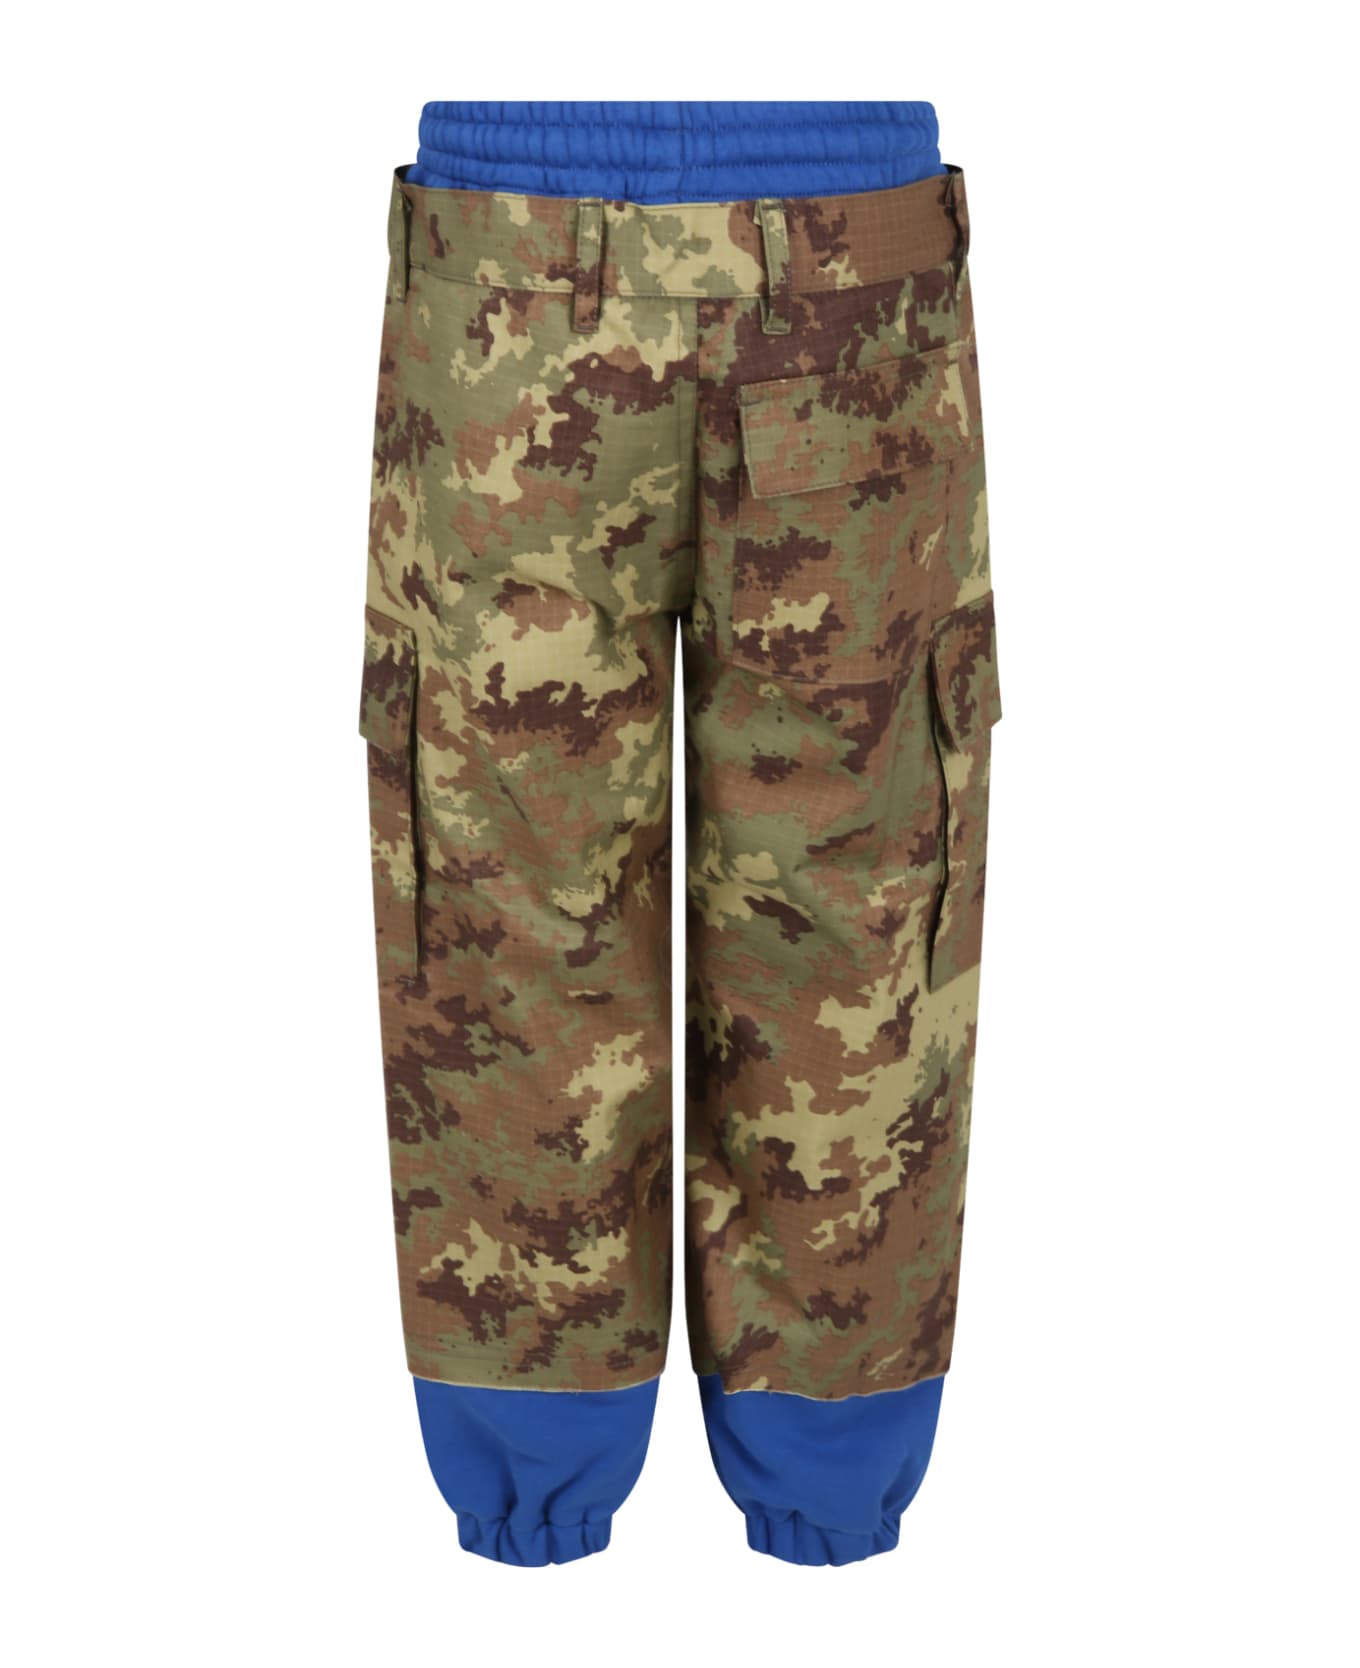 MYAR Multicolor Pants For Boy With Logo - Multicolor